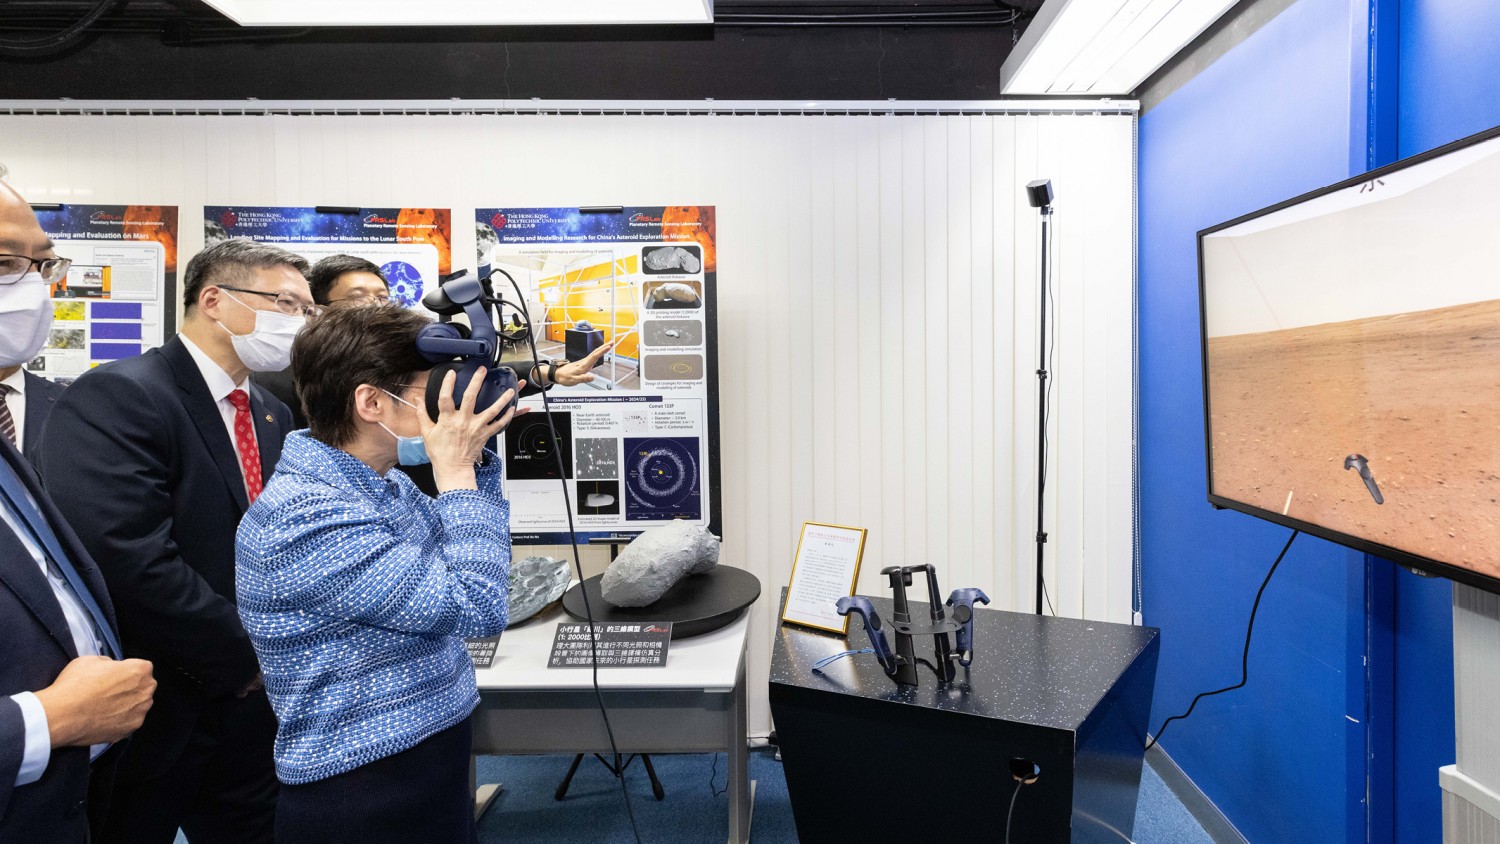 林鄭月娥女士使用虛擬實境系統體驗登陸月球和火星